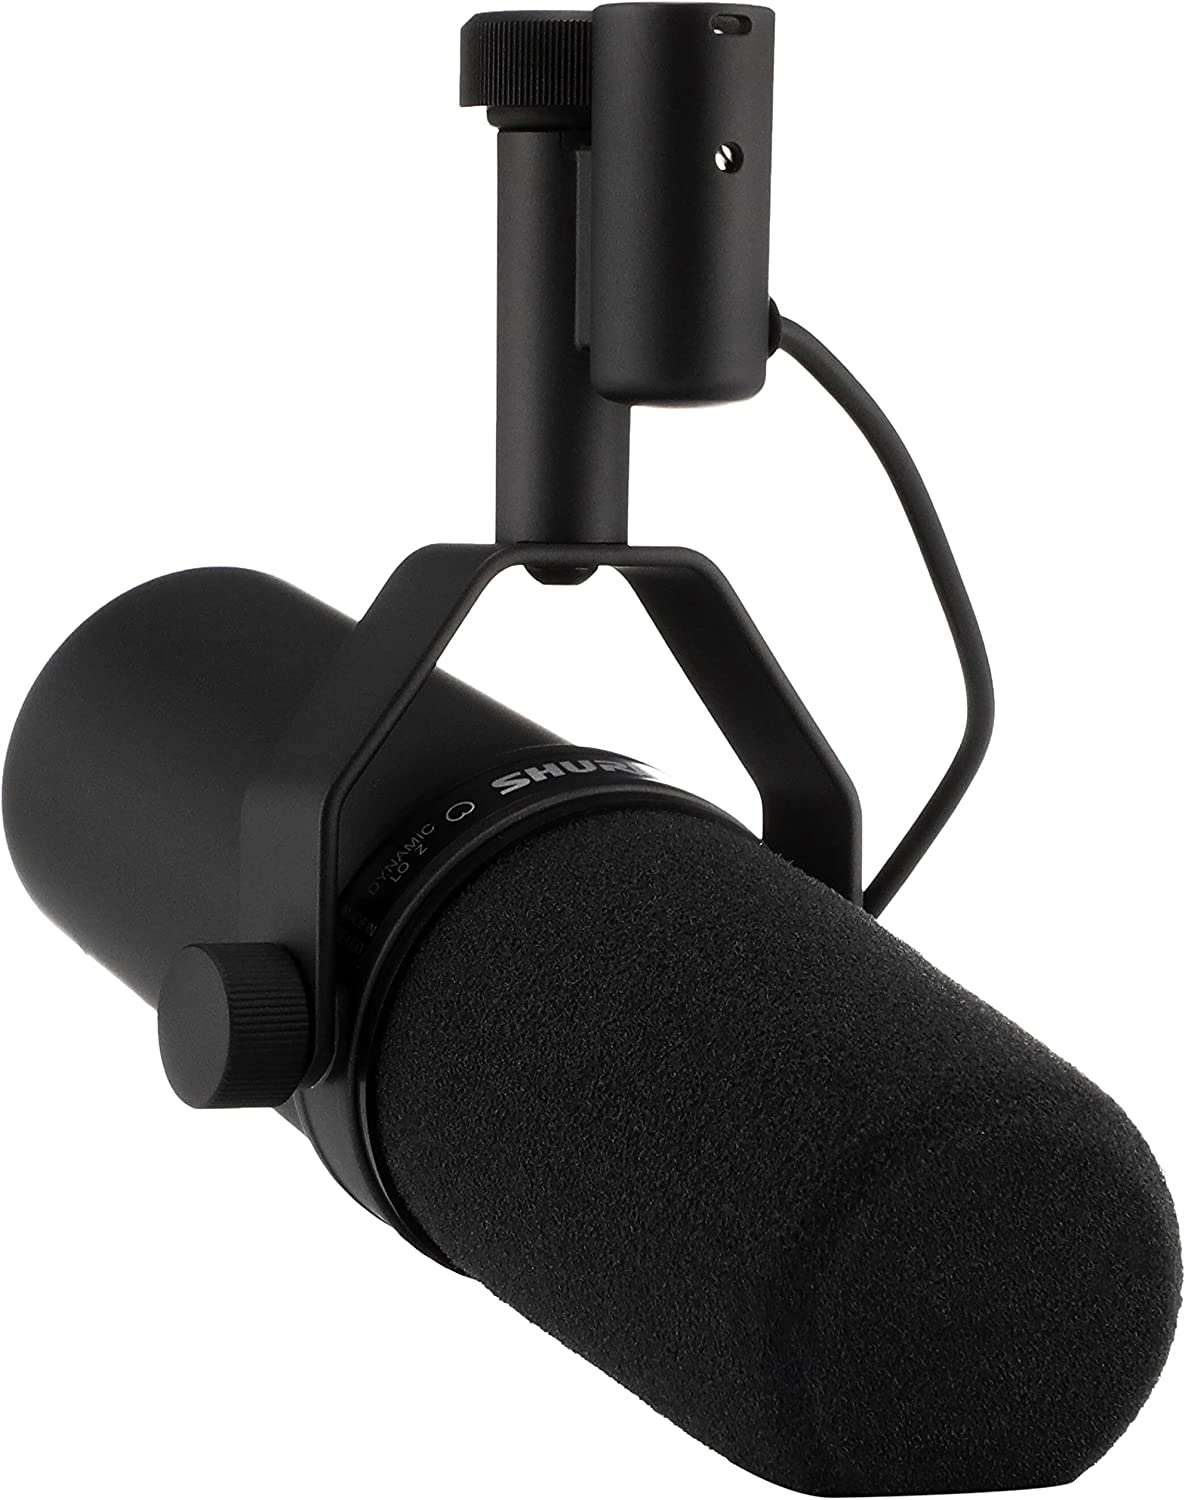 میکروفن داینامیک شور Shure Sm7B Vocal Dynamic Microphone For Broadcast - ارسال ۱۰ الی ۱۵ روز کاری